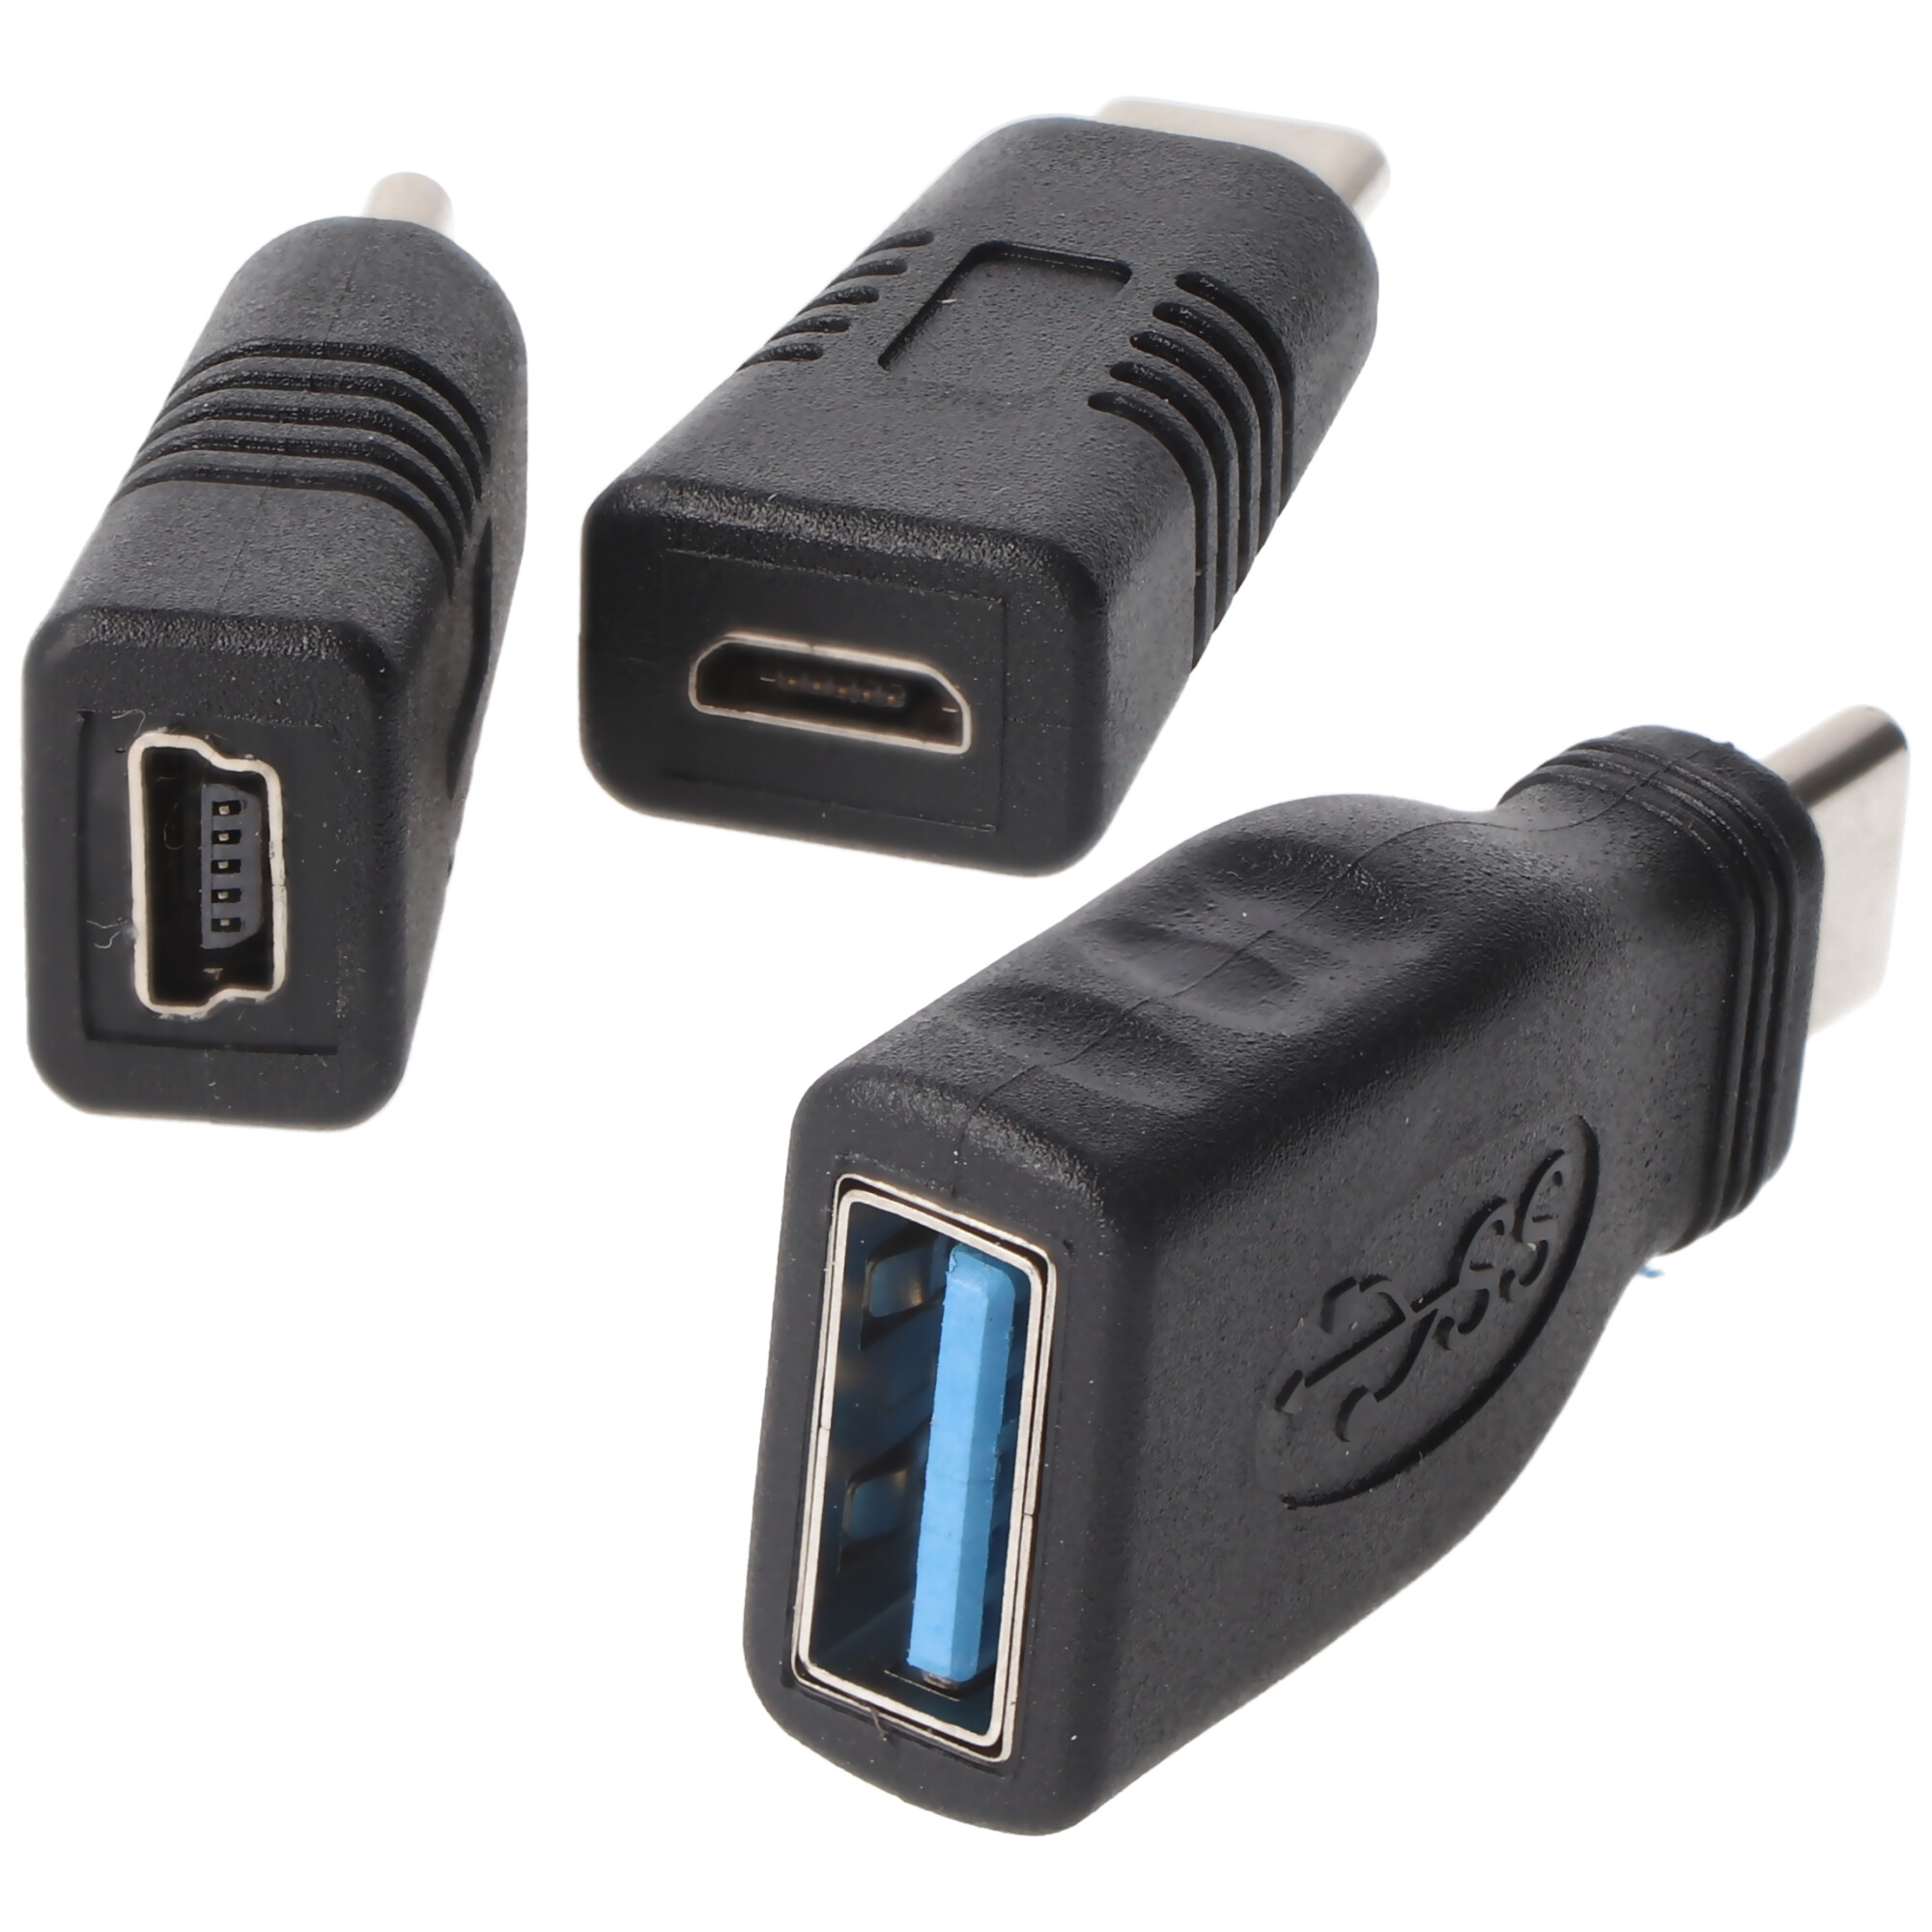 Lot de 3 adaptateurs pour connecteur Micro-USB et Mini-USB vers USB-C, Chargeurs pour USB-C, Chargeurs